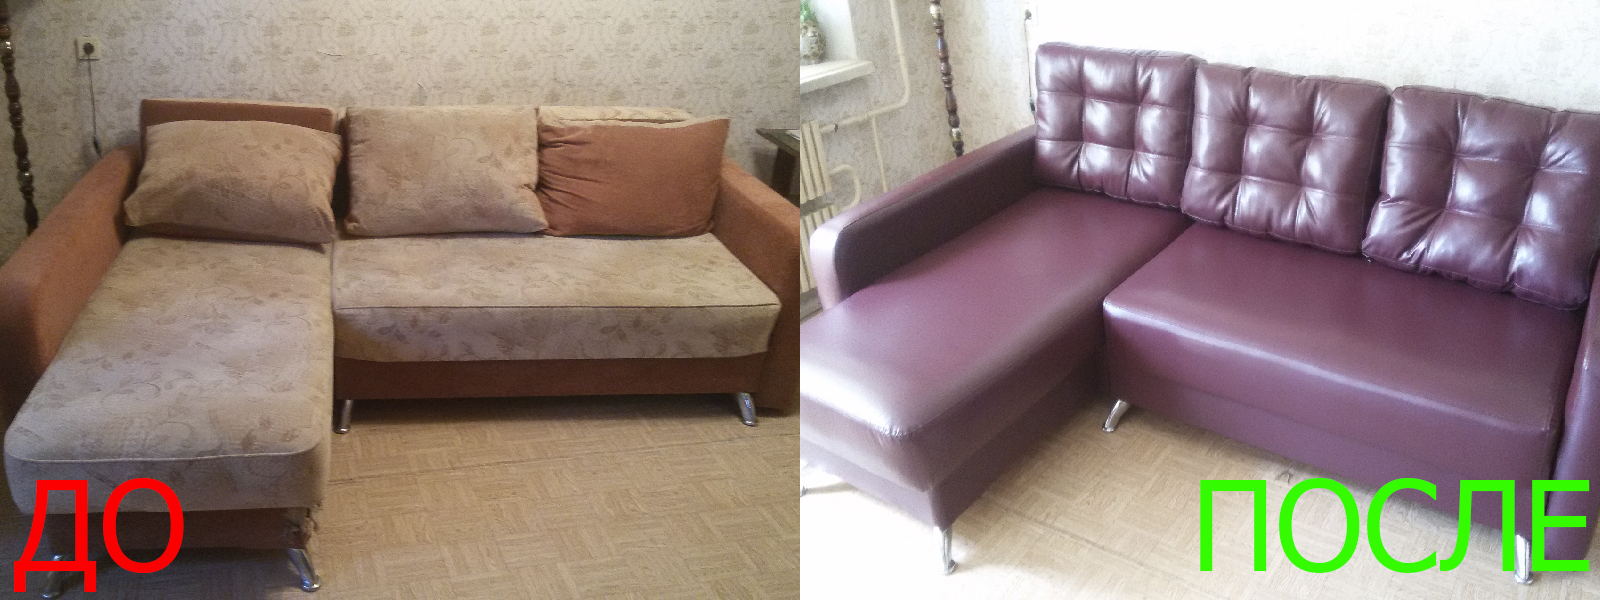 Ремонт диванов искусственной кожей в Керчи разумные цены на услуги, опытные специалисты